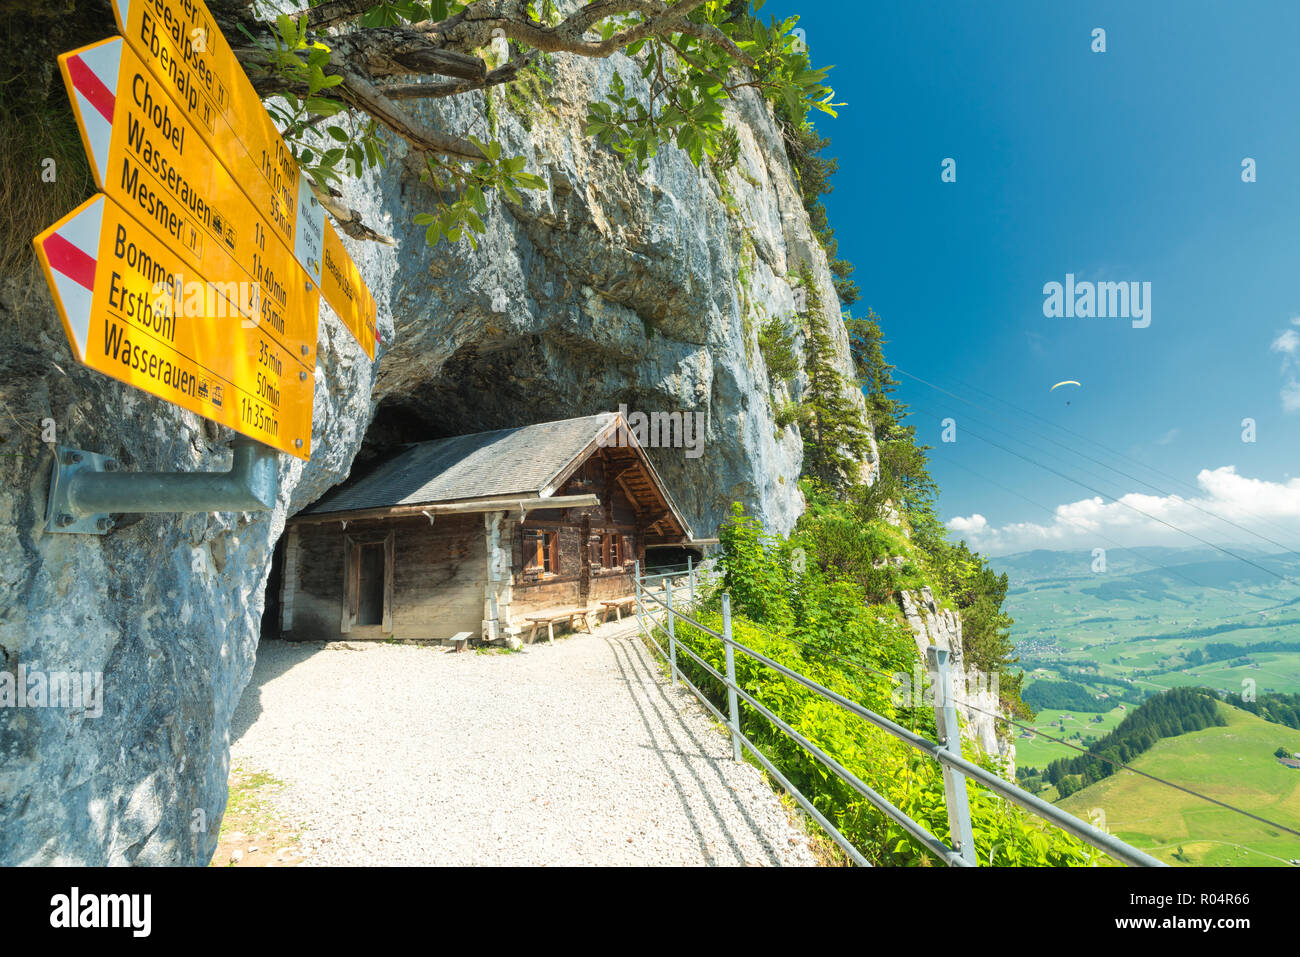 Señalización de rutas de senderismo, Wildkirchli, Ebenalp, Appenzell Innerrhoden, Suiza, Europa Foto de stock